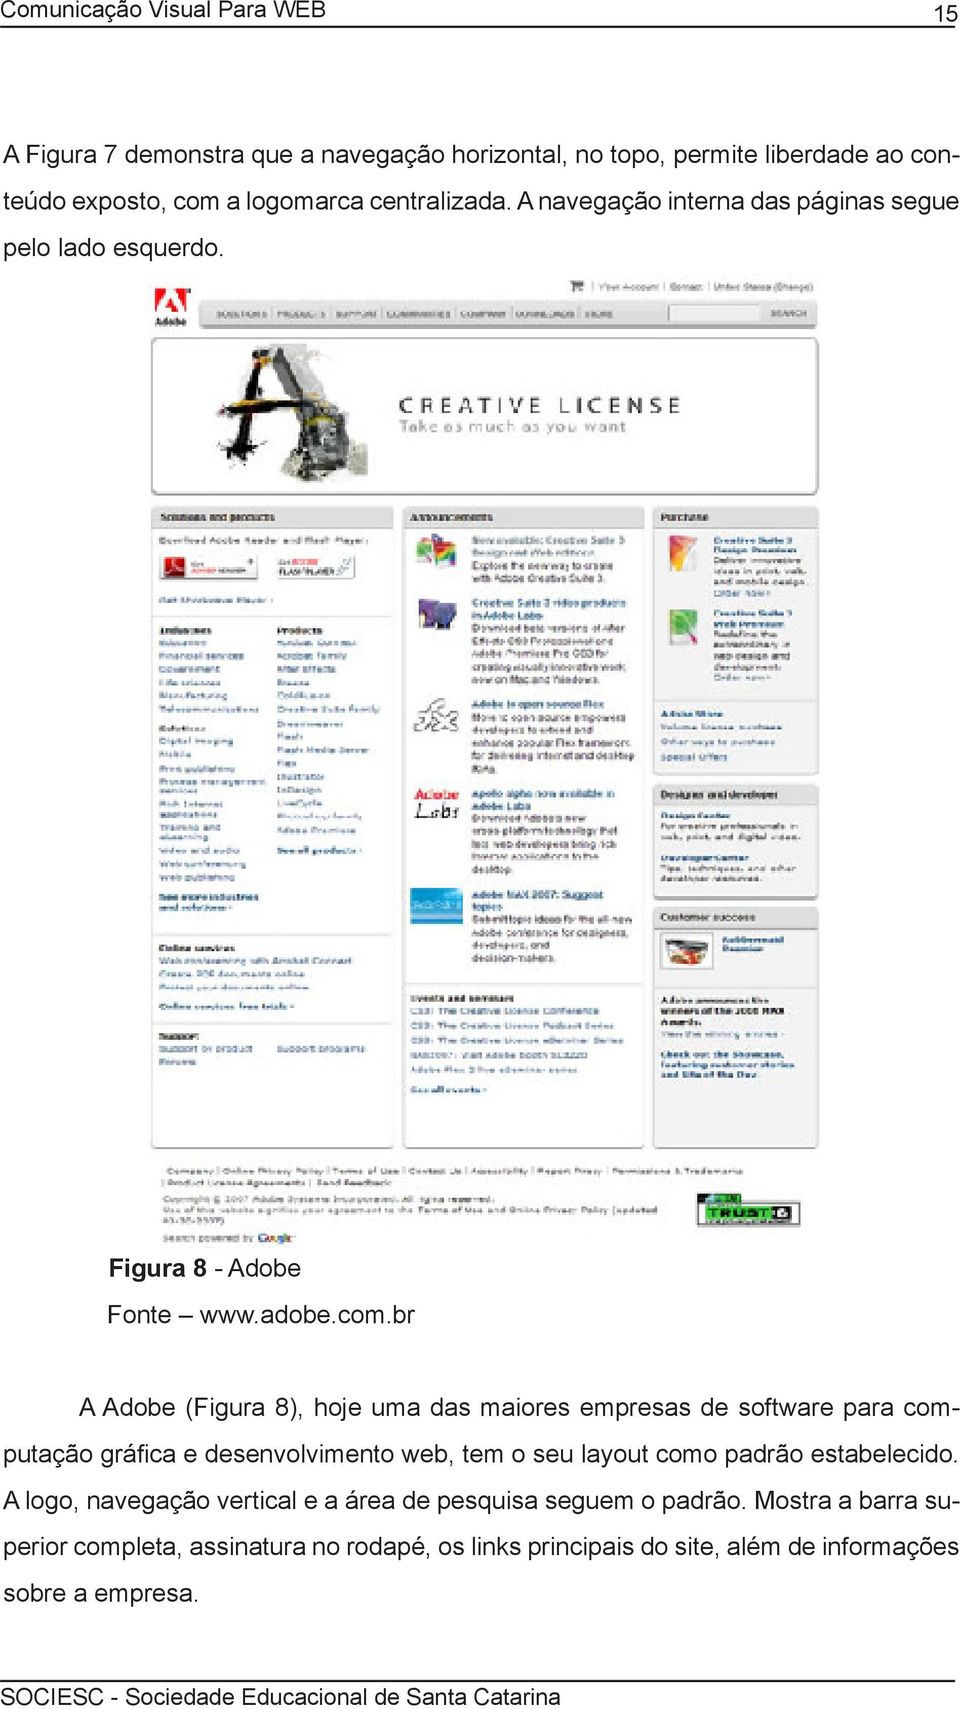 br A Adobe (Figura 8), hoje uma das maiores empresas de software para computação gráfica e desenvolvimento web, tem o seu layout como padrão